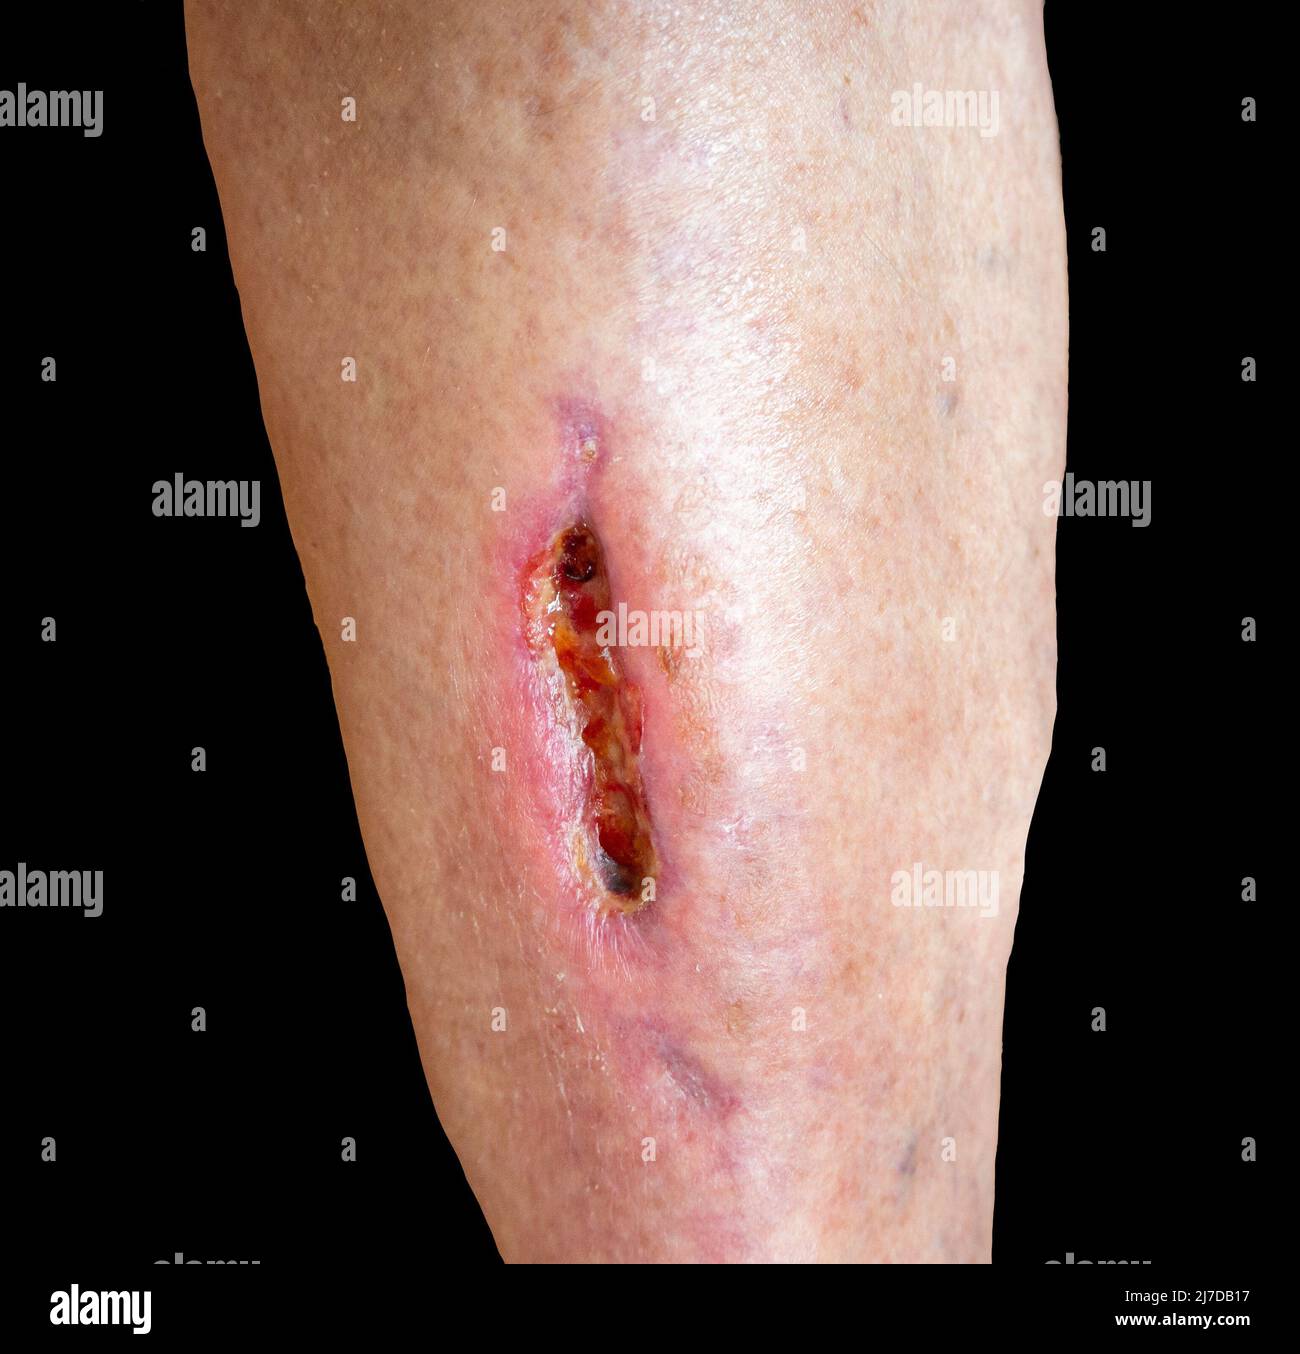 Tief klaffende Wunde am Geliebten-Bein während der medizinischen Behandlung nach schwerer Verletzung. Hautmangel. Isoliert auf Schwarz Stockfoto